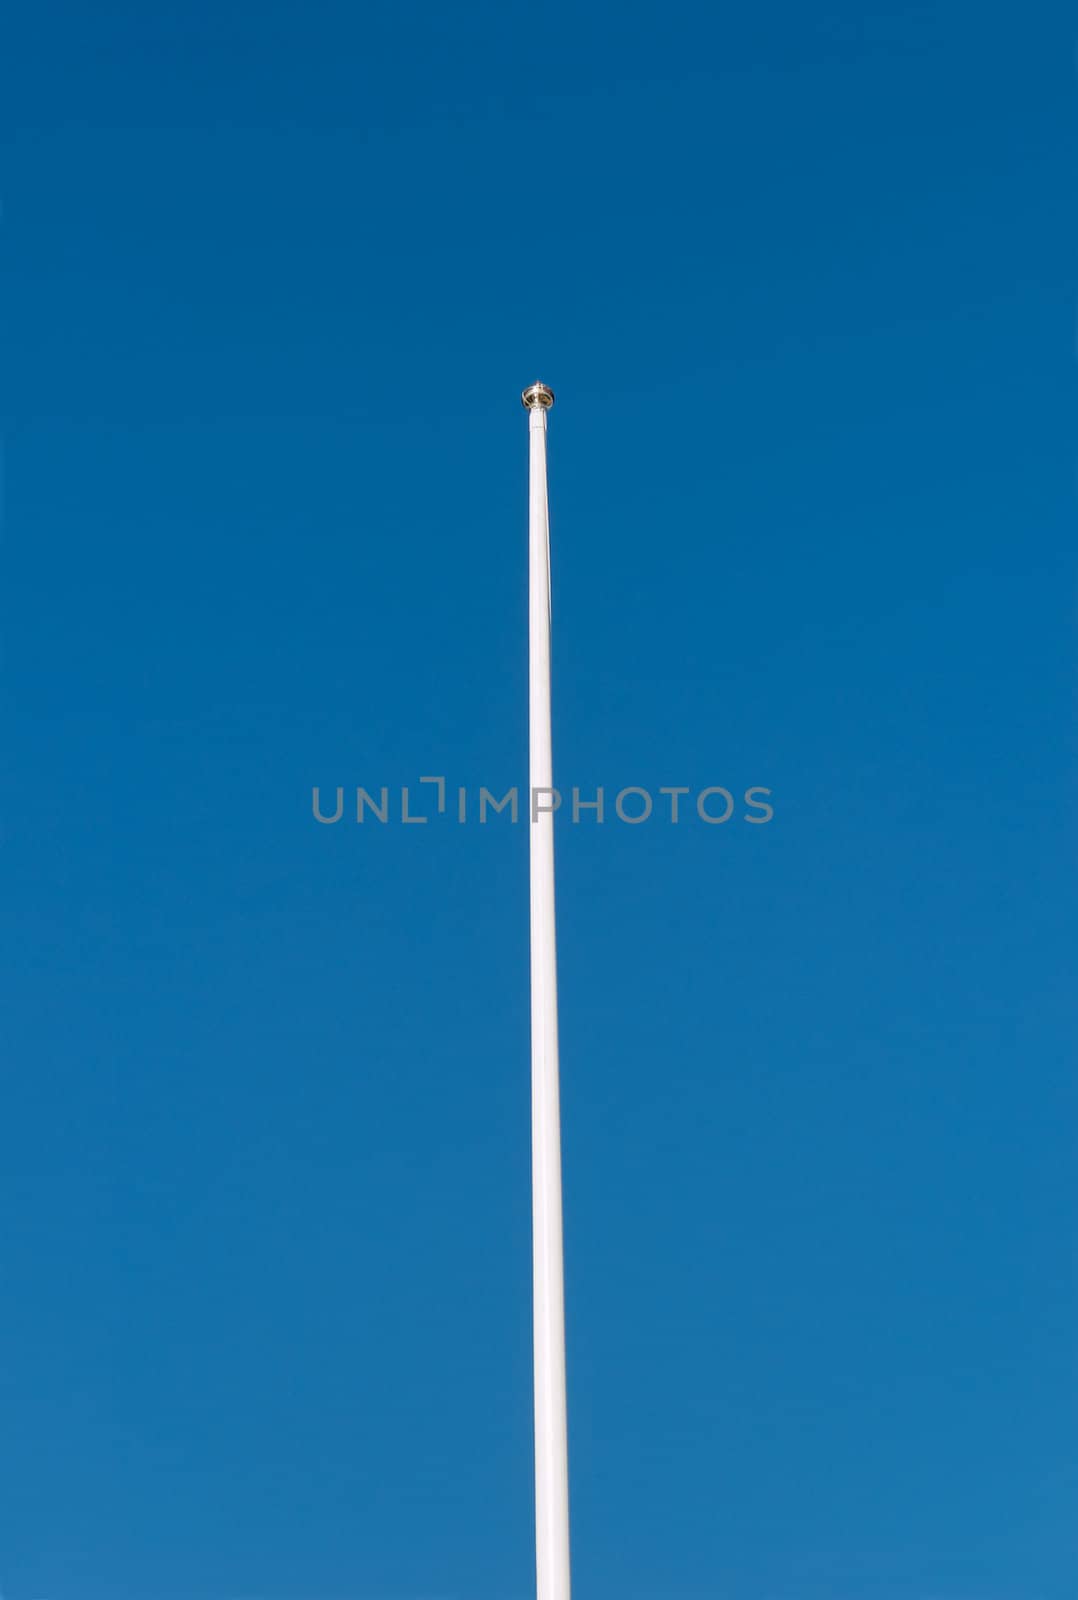 Empty flagpole against deep blue sky.
